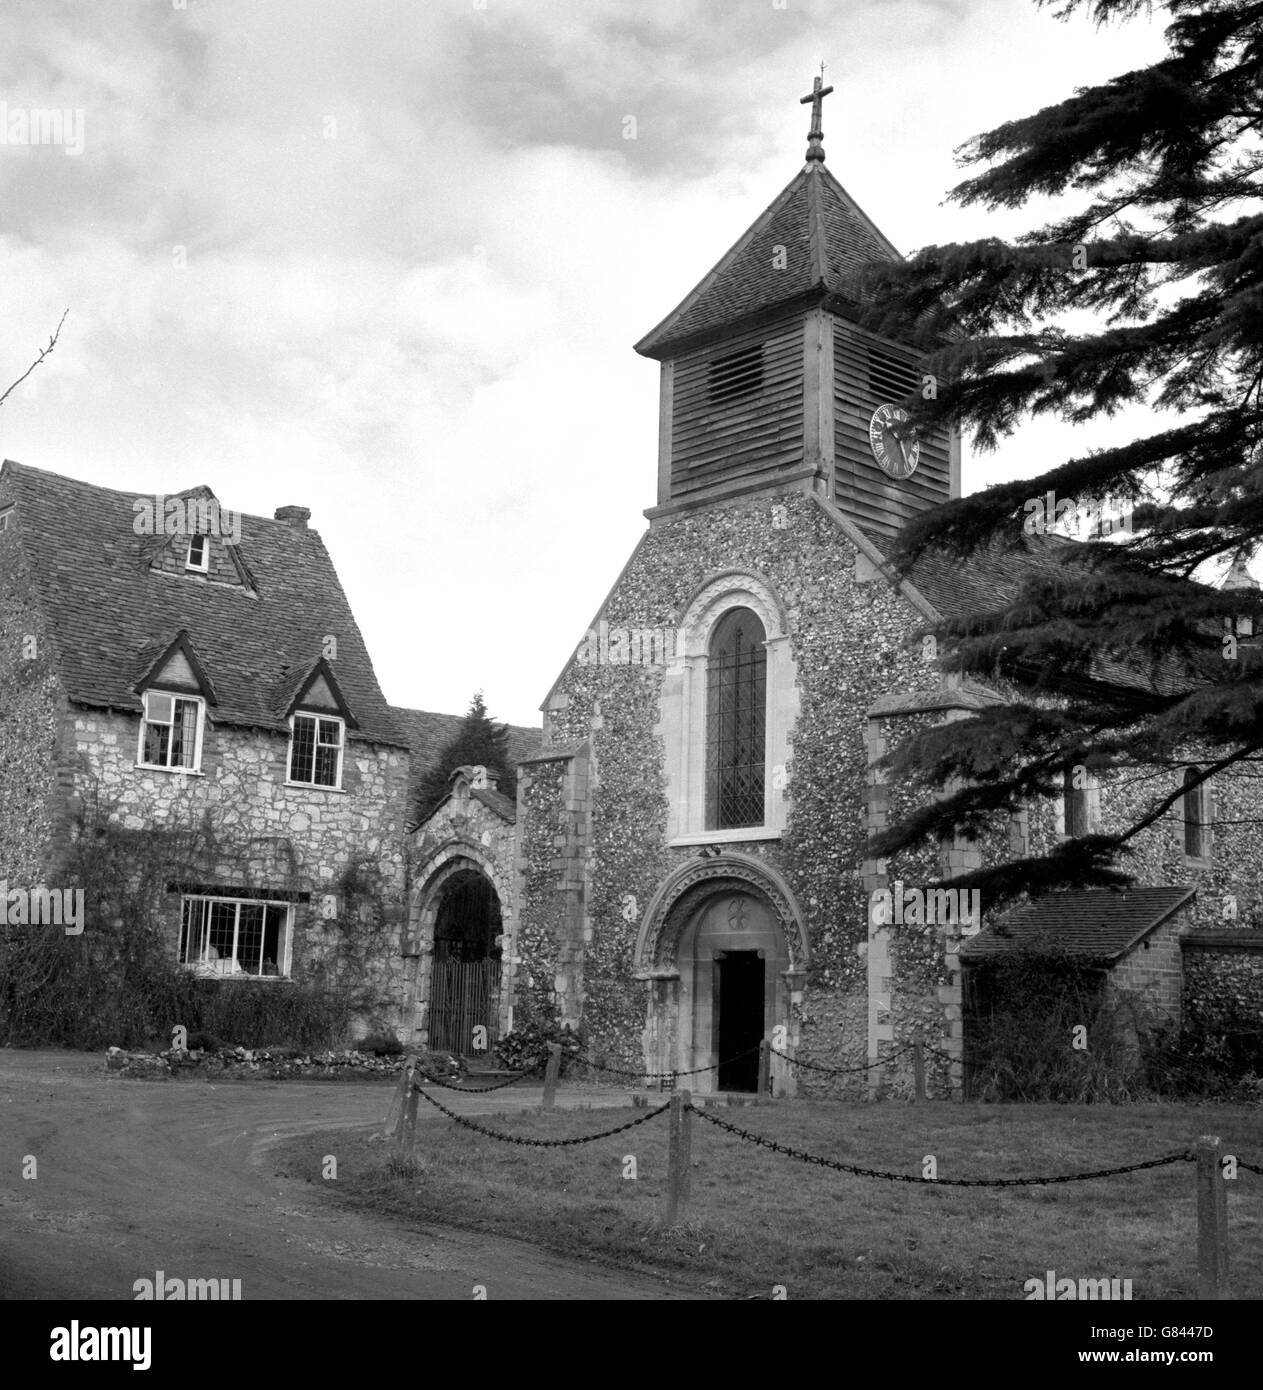 Le front nord de l'ancienne église de Sainte-Marie-la-Vierge à Hurley, Berkshire. Bien que principalement normand, il y a des preuves de travaux saxons dans le bâtiment. Banque D'Images